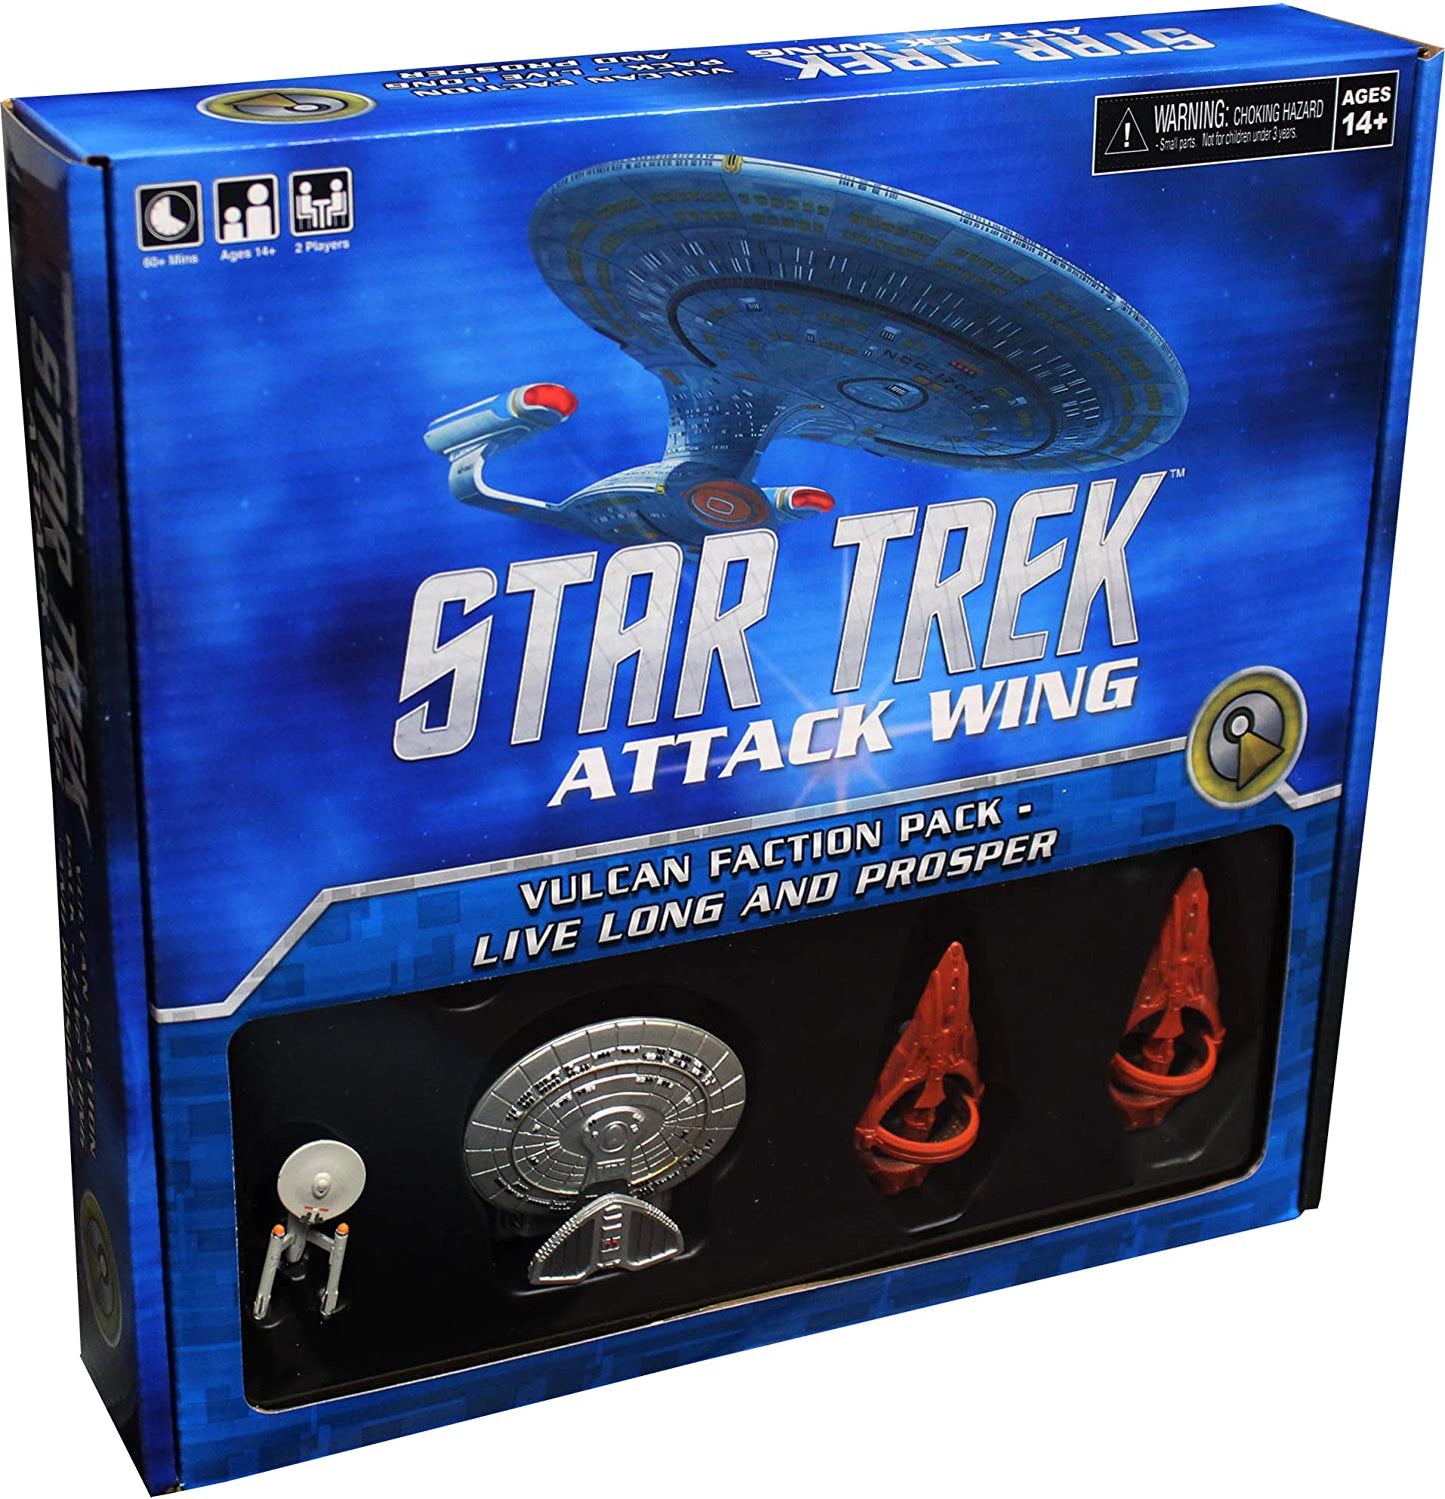 Star Trek Attack Wing Vulcan Faction Pack